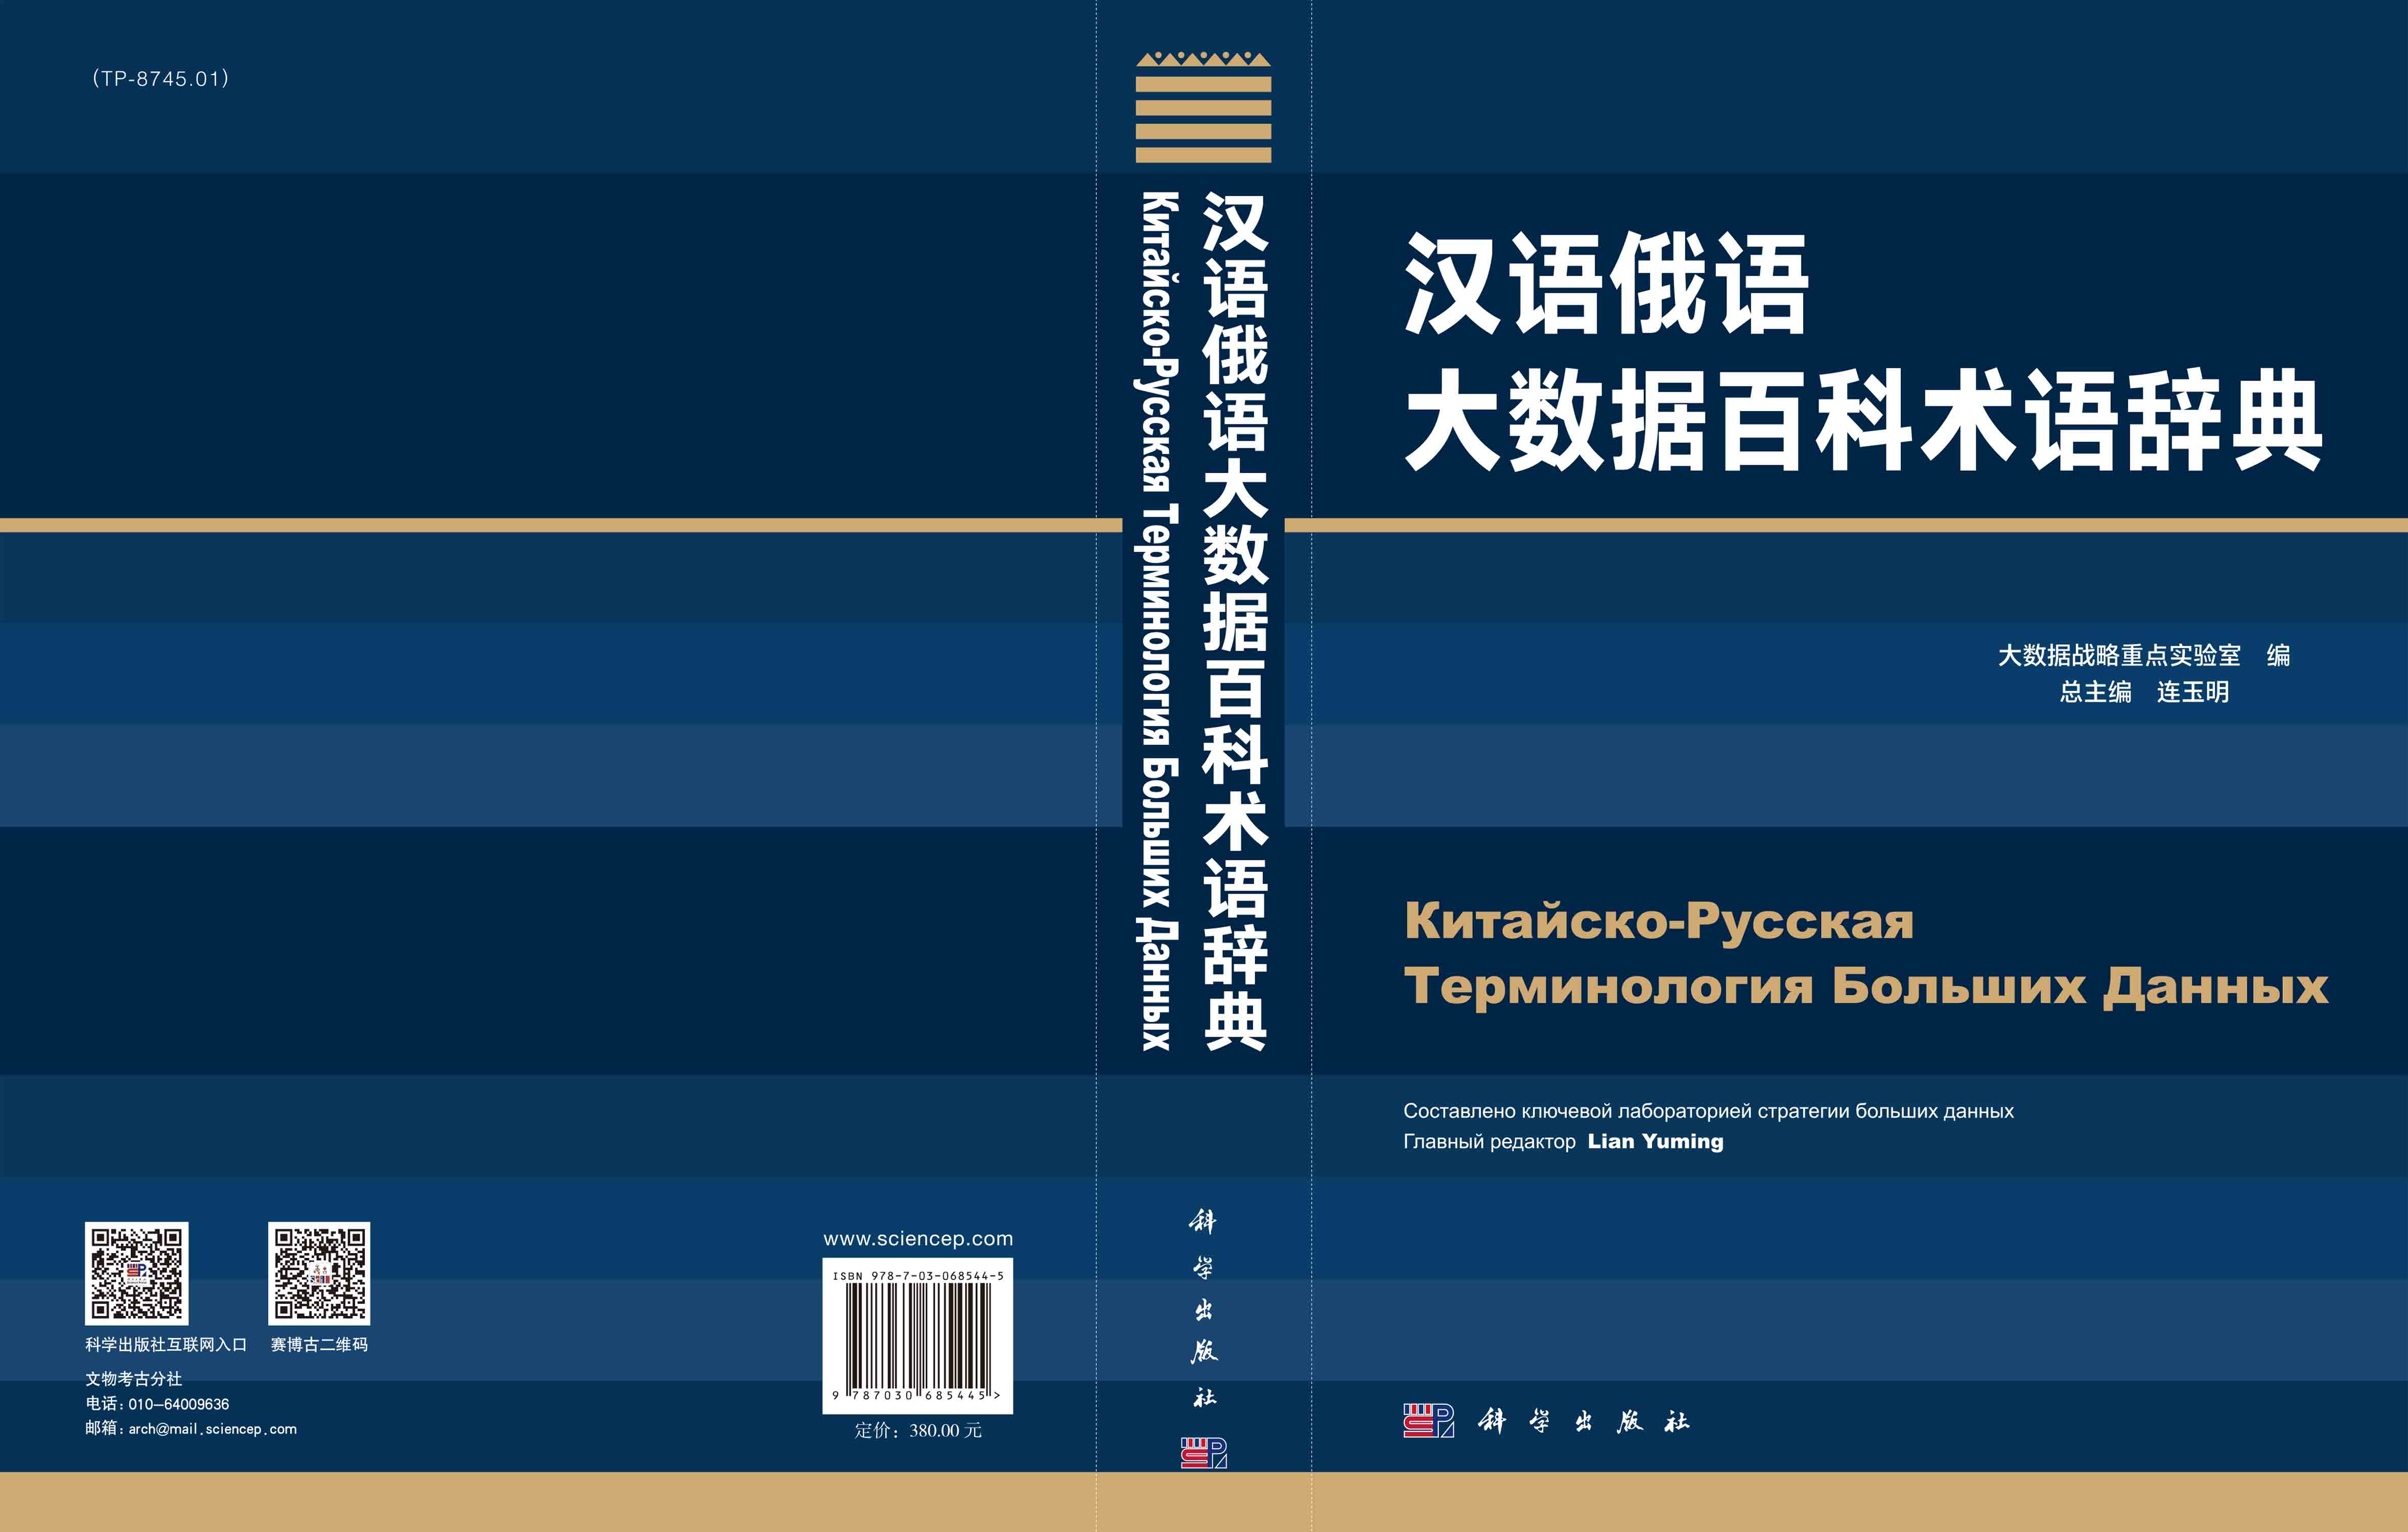 汉语俄语大数据百科术语辞典